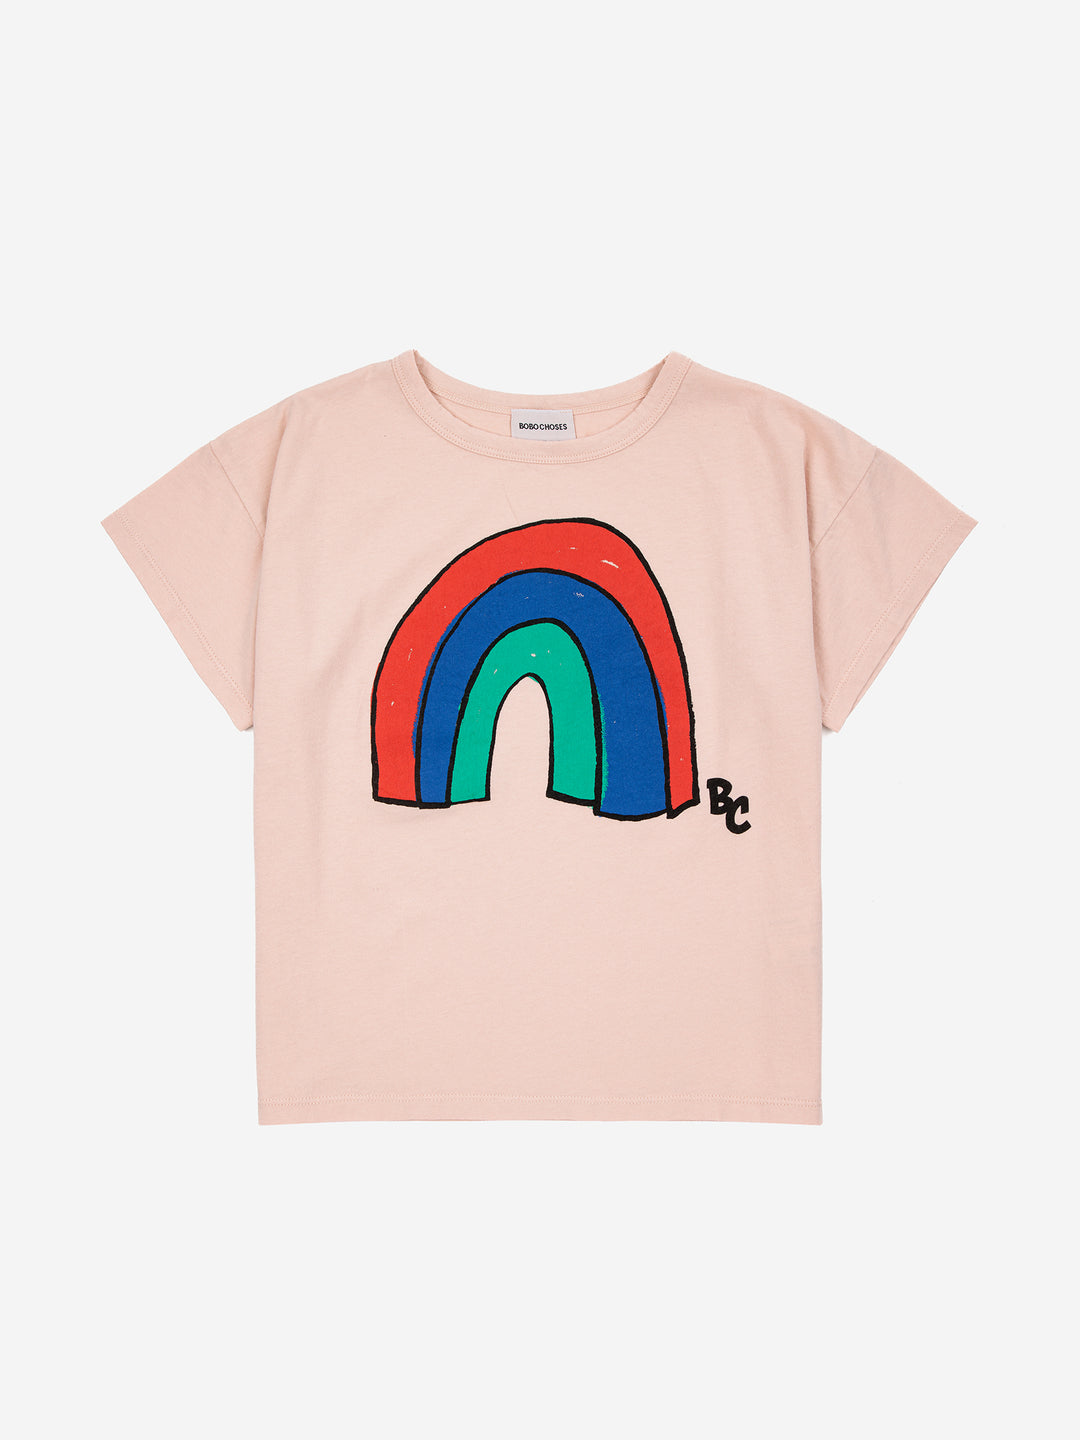 Rainbow tshirt by Bobo Choses